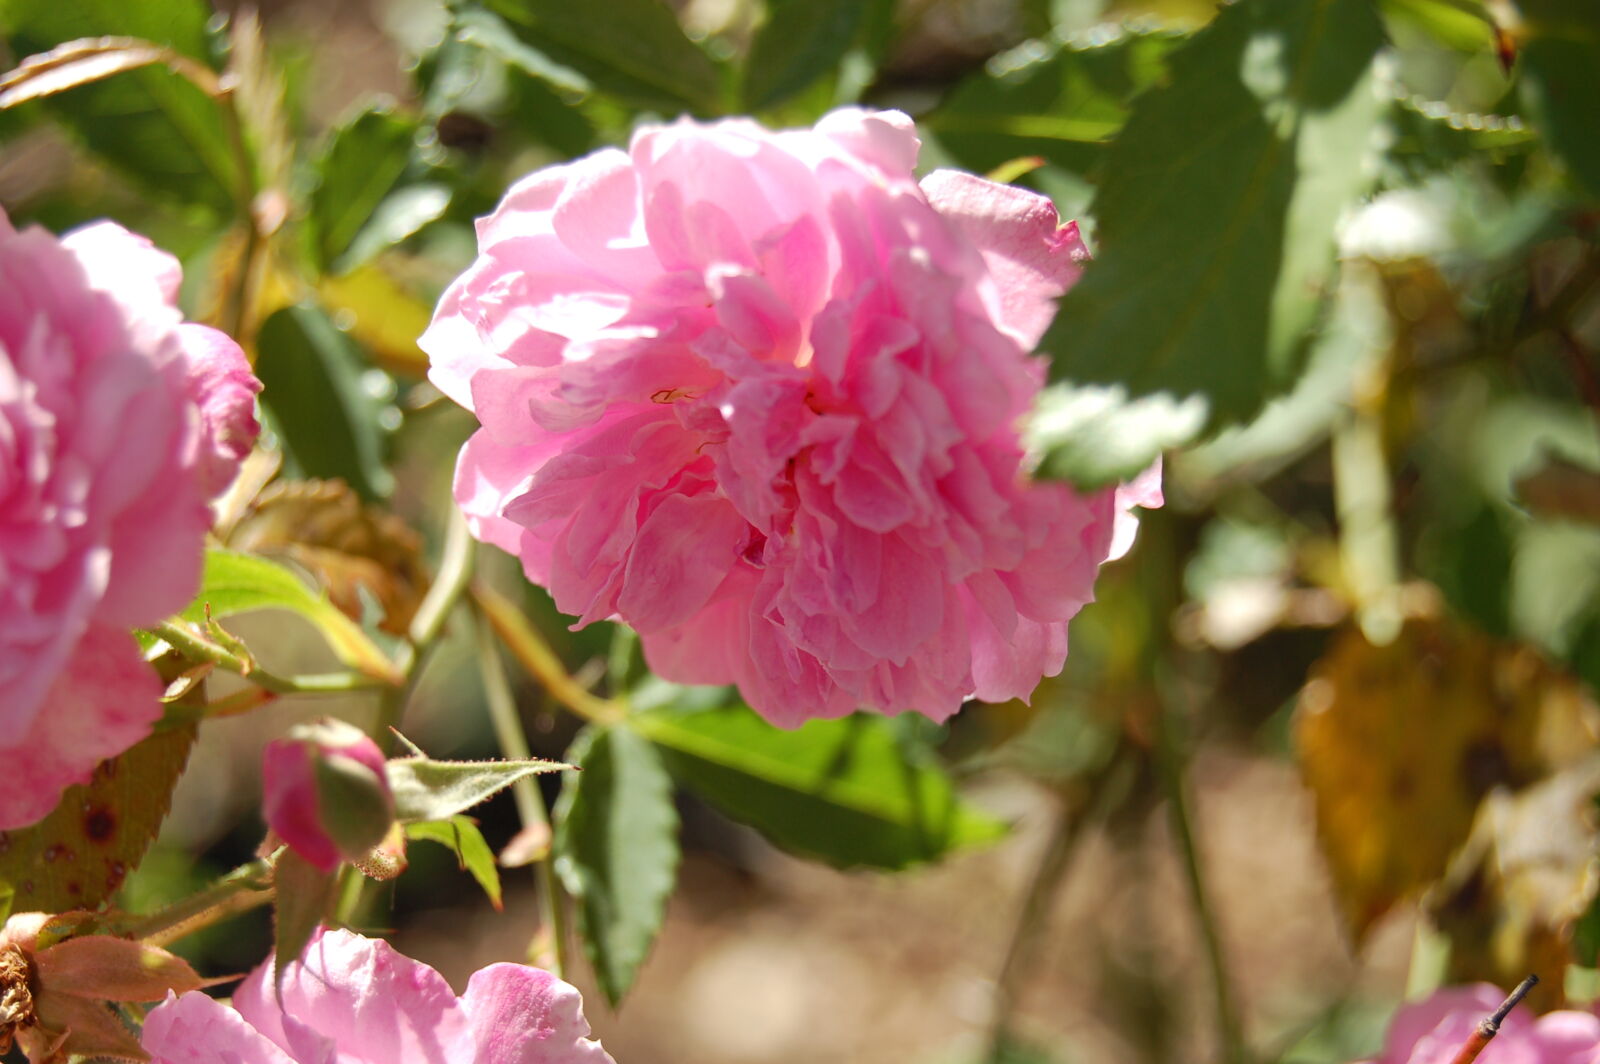 Nikon D50 + AF-S DX Zoom-Nikkor 18-55mm f/3.5-5.6G ED sample photo. Flower, garden, pink, flower photography